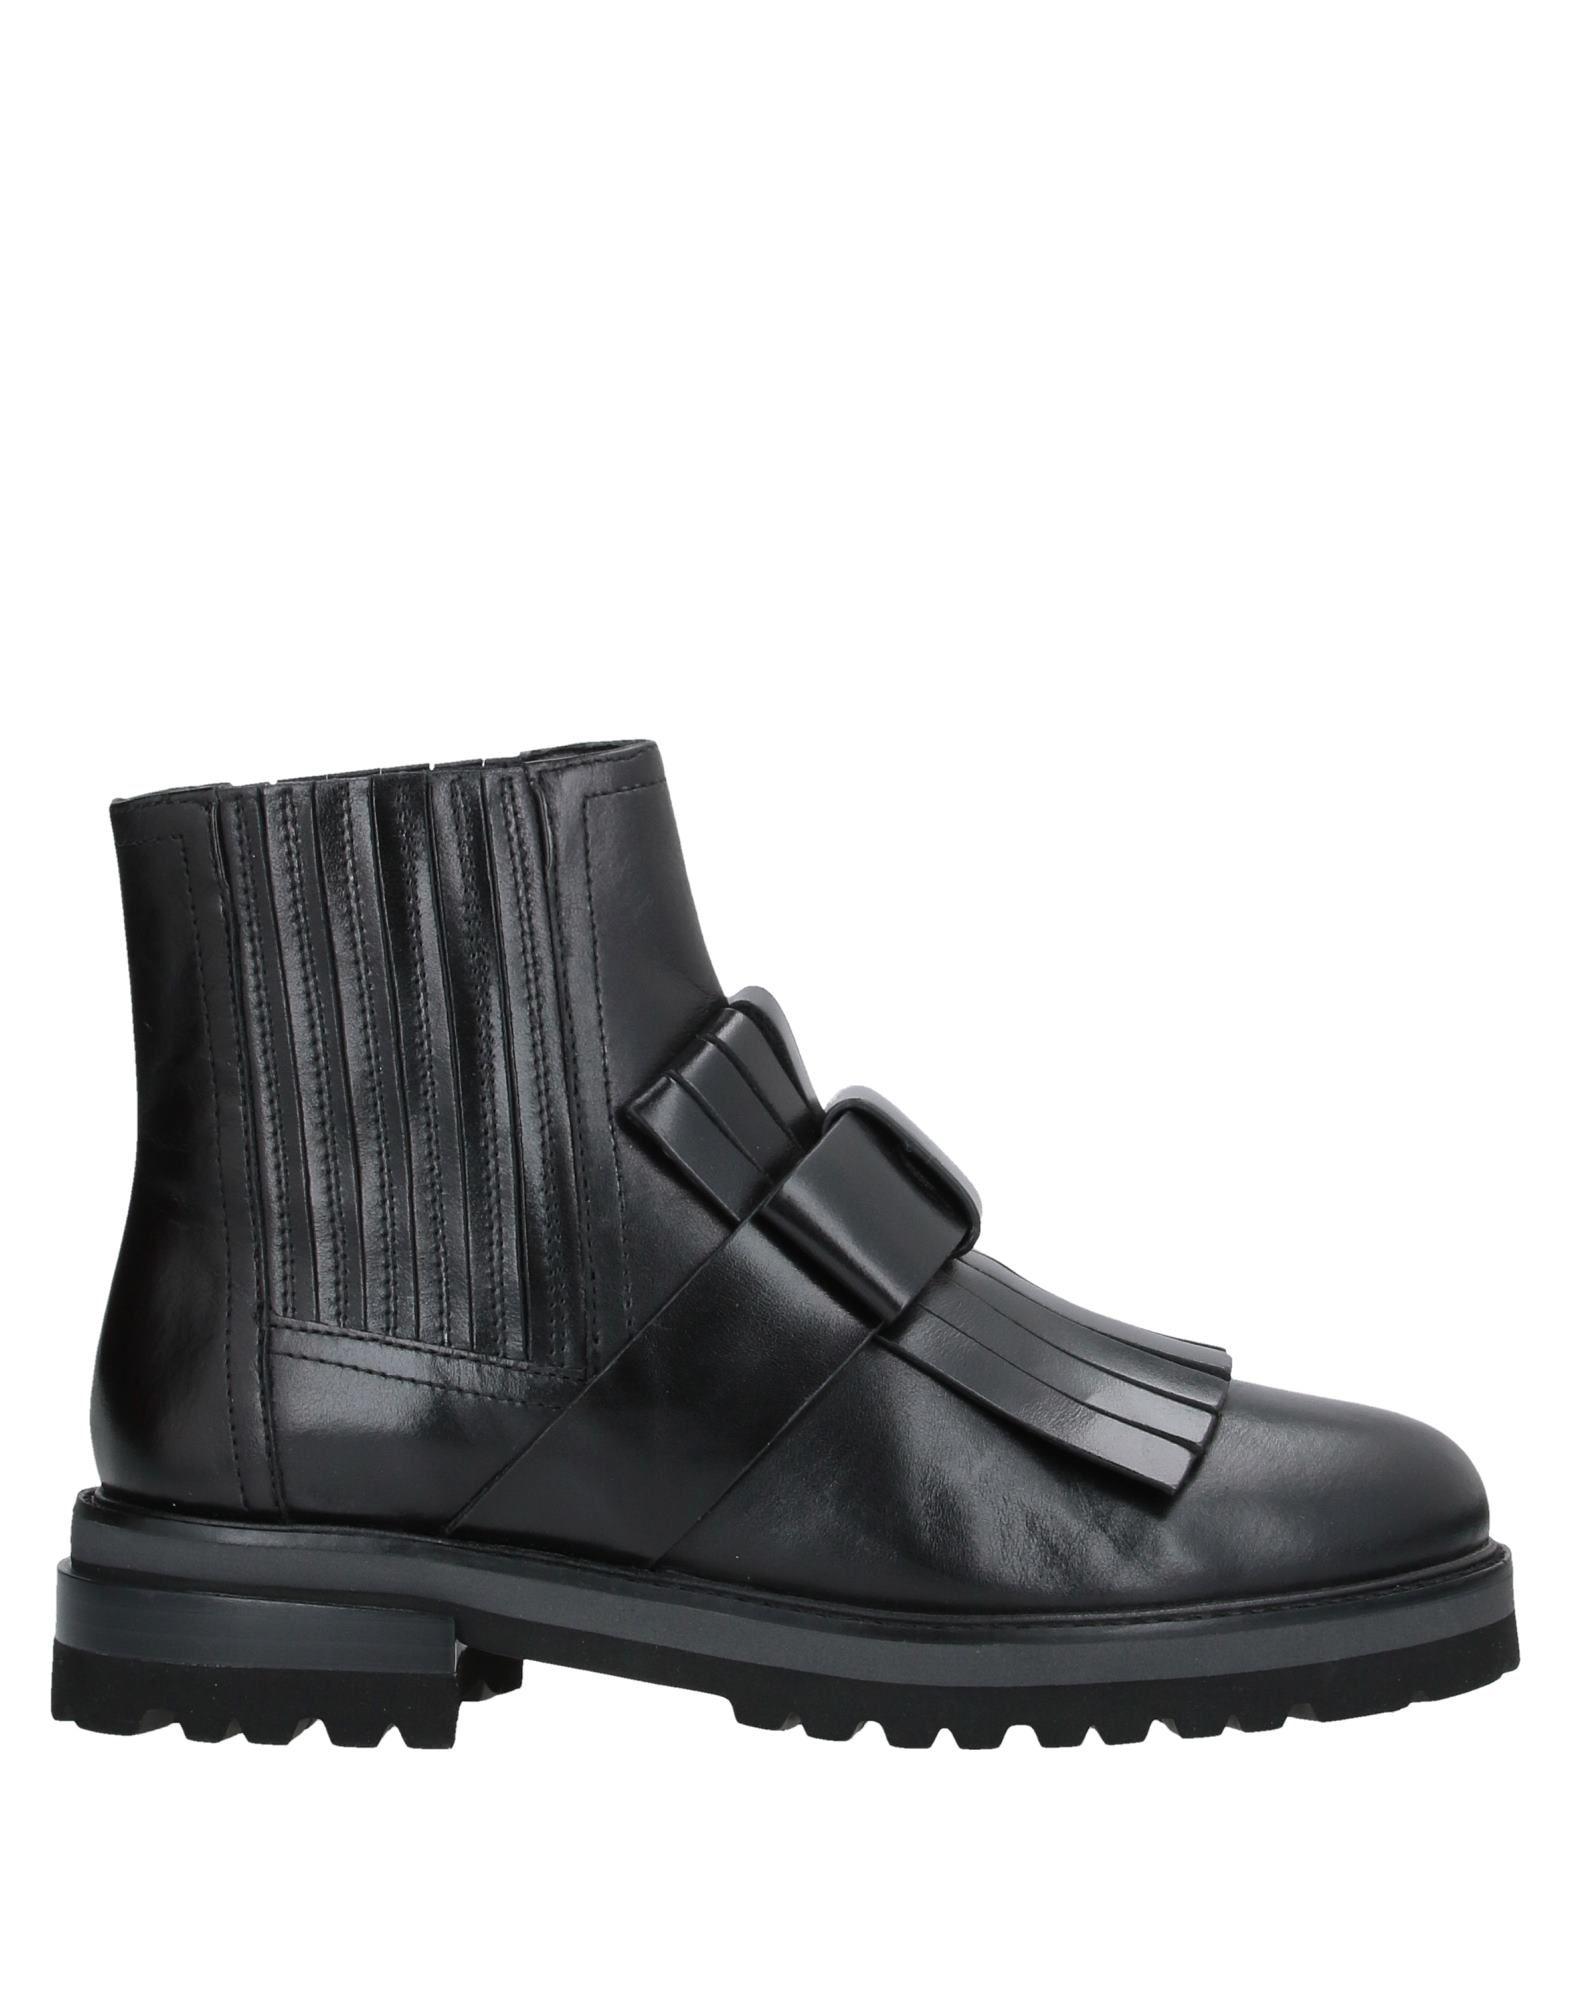 Elvio Zanon Ankle Boots in Black - Lyst